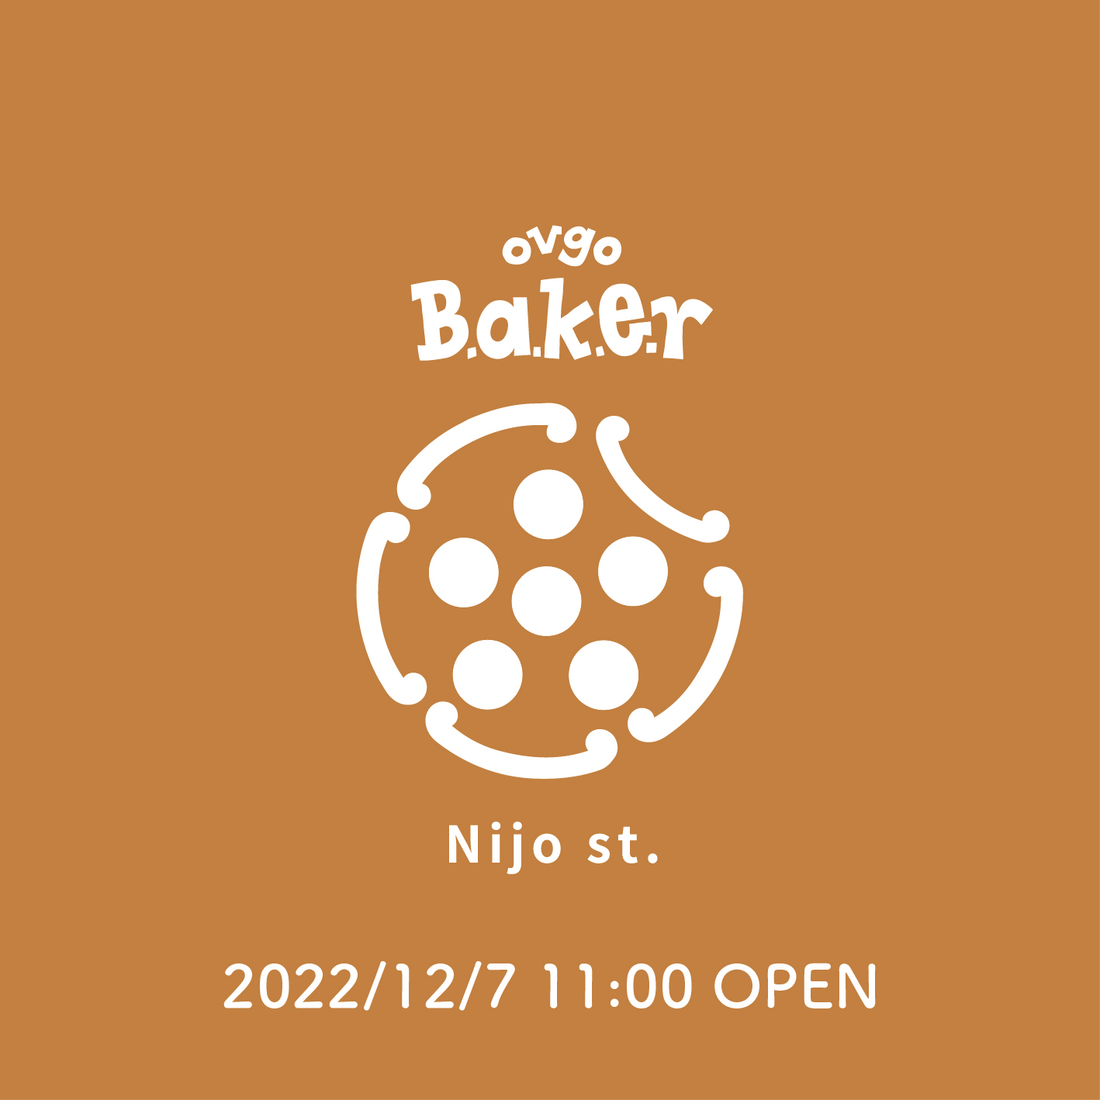 京都に関西初となる路面店「ovgo Baker Nijo St.」を12月7日(水)OPEN